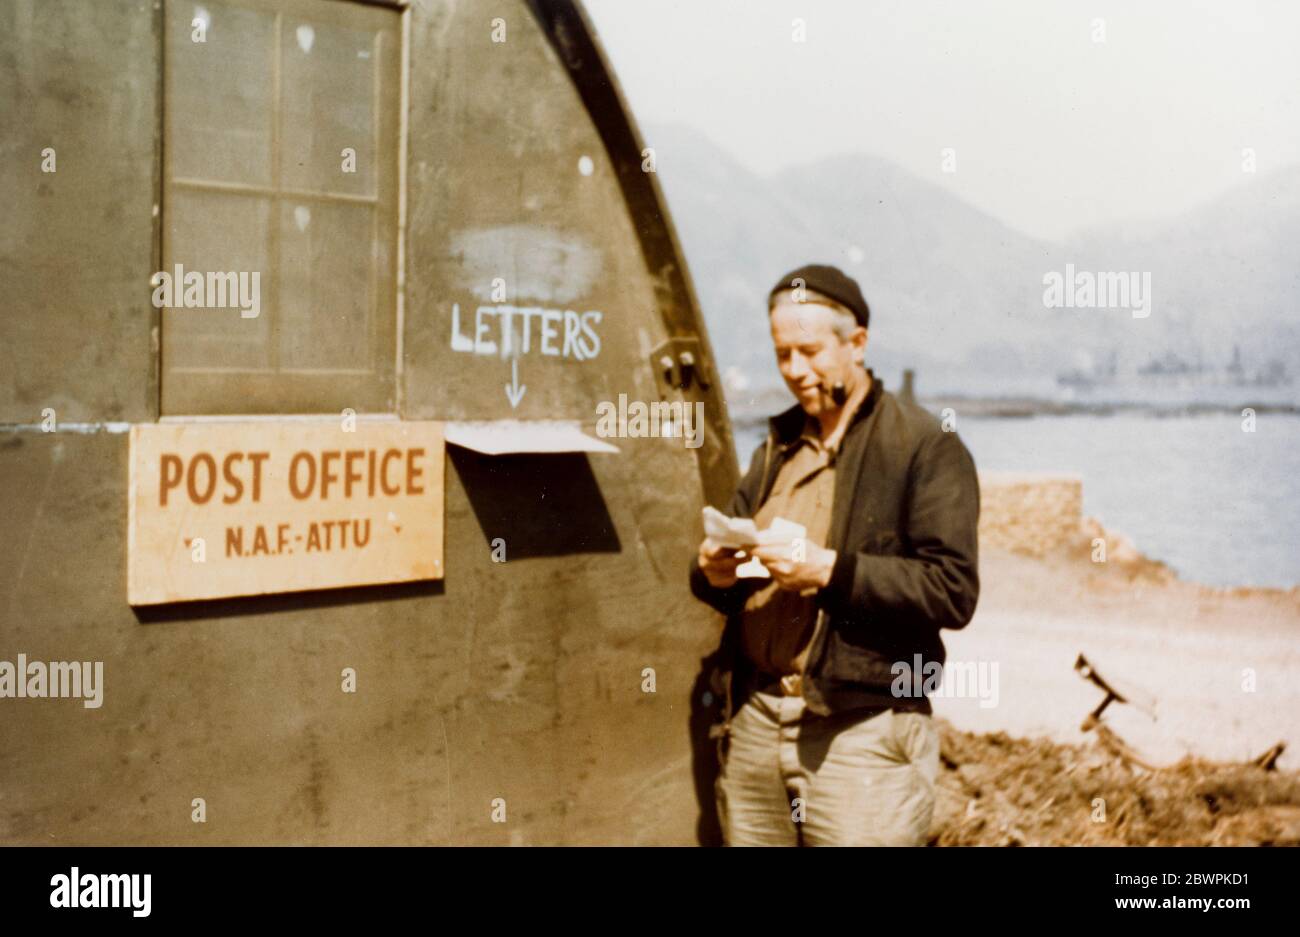 Centre aérien naval BUREAU de poste ATTU, Alaska, 20 octobre 1944. Adak, Alaska. Bureau de poste sur le front de mer, 20 octobre 1944. Notez le panneau pour le bureau de poste ATTU de l'installation navale et la lettre de lecture de l'homme. Banque D'Images